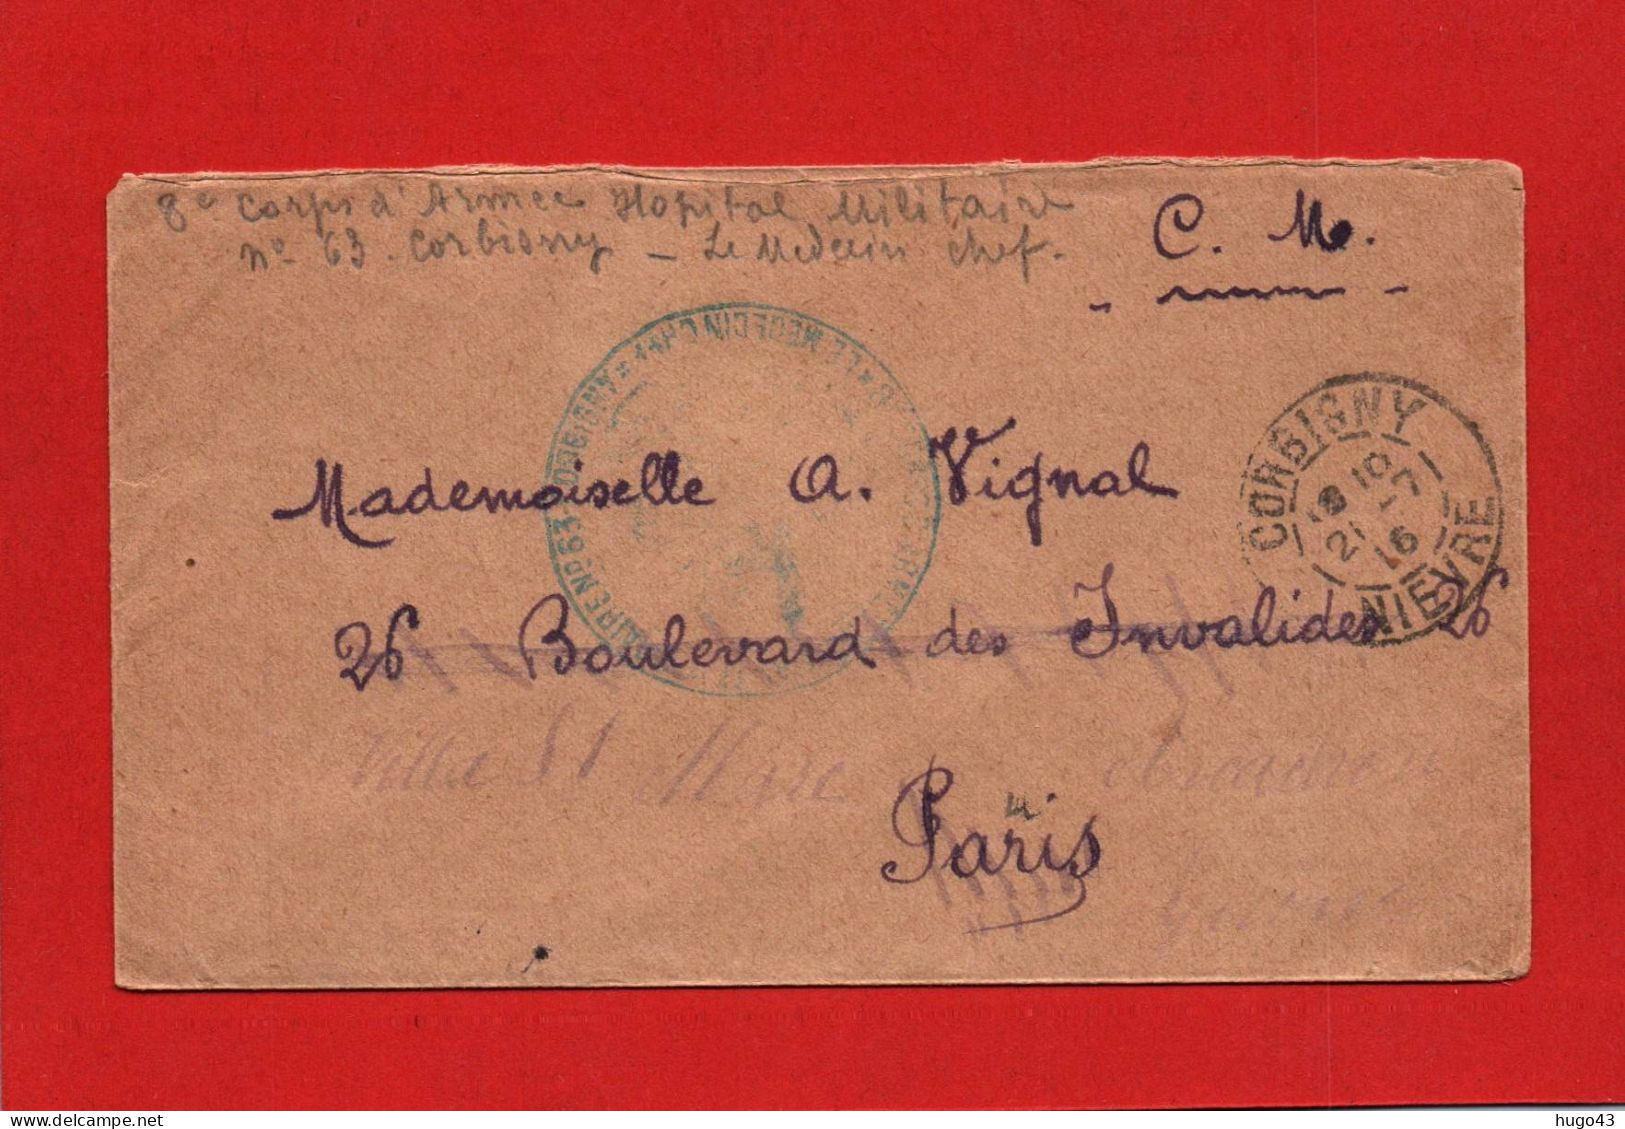 ENVELOPPE DU 21/7/1916 - CACHET HOPITAL MILITAIRE COMPLEMENTAIRE N° 63 - A CORBIGNY DANS LA NIEVRE - Lettres & Documents